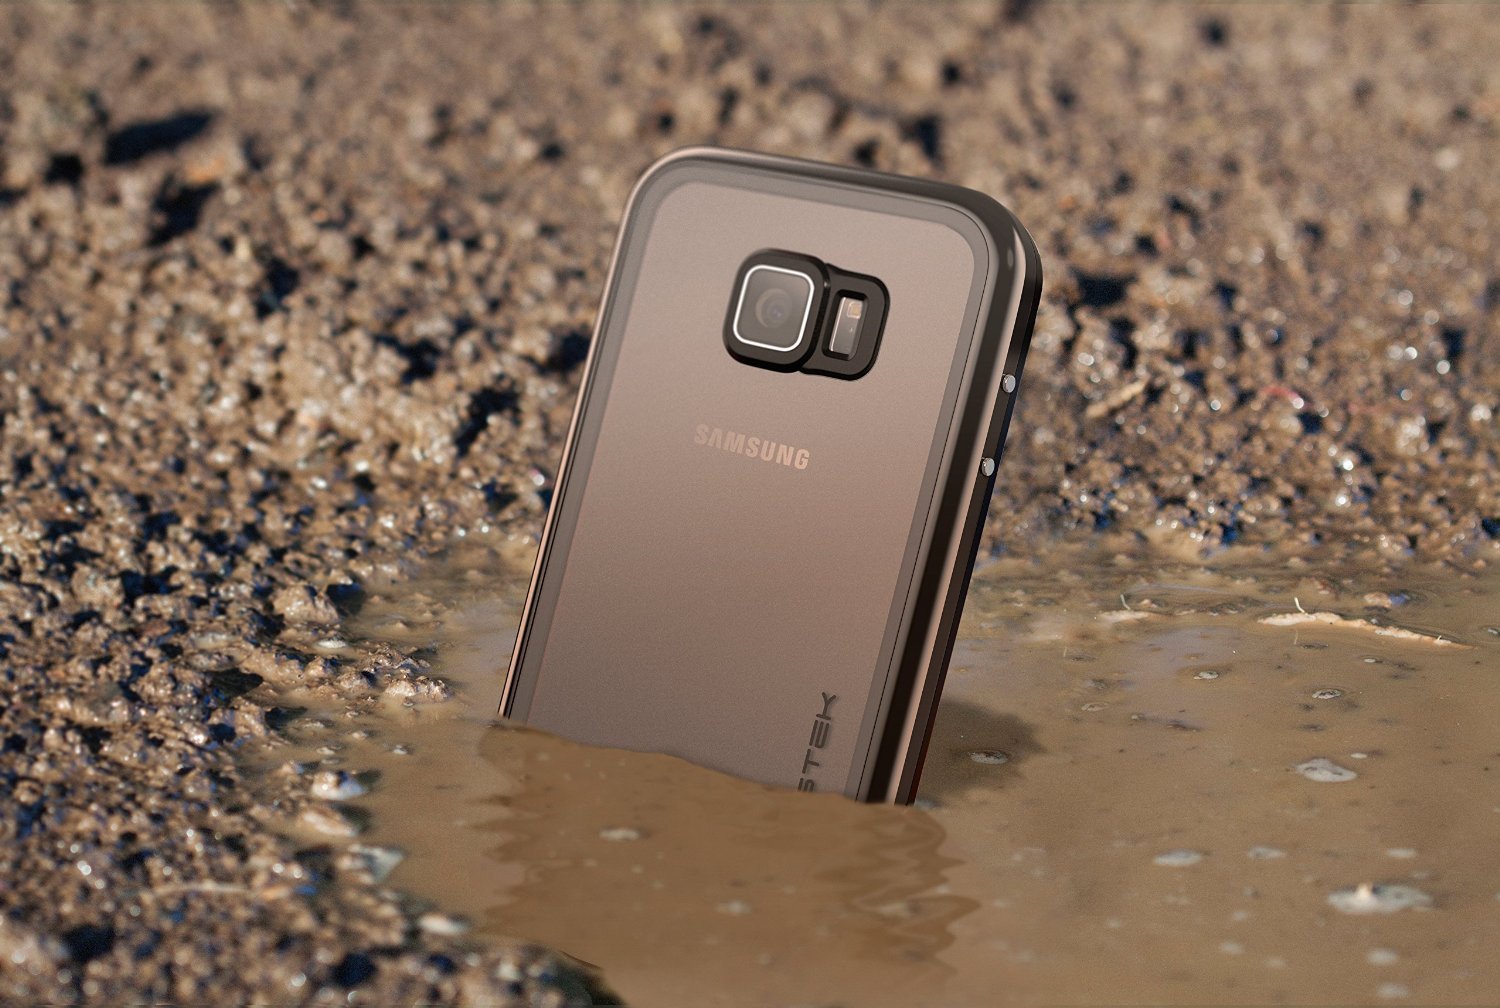 Galaxy S6 Waterproof Case, Ghostek Atomic 2.0 Gold  Water/Shock/Dirt/Snow Proof | Lifetime Warranty - PunkCase NZ